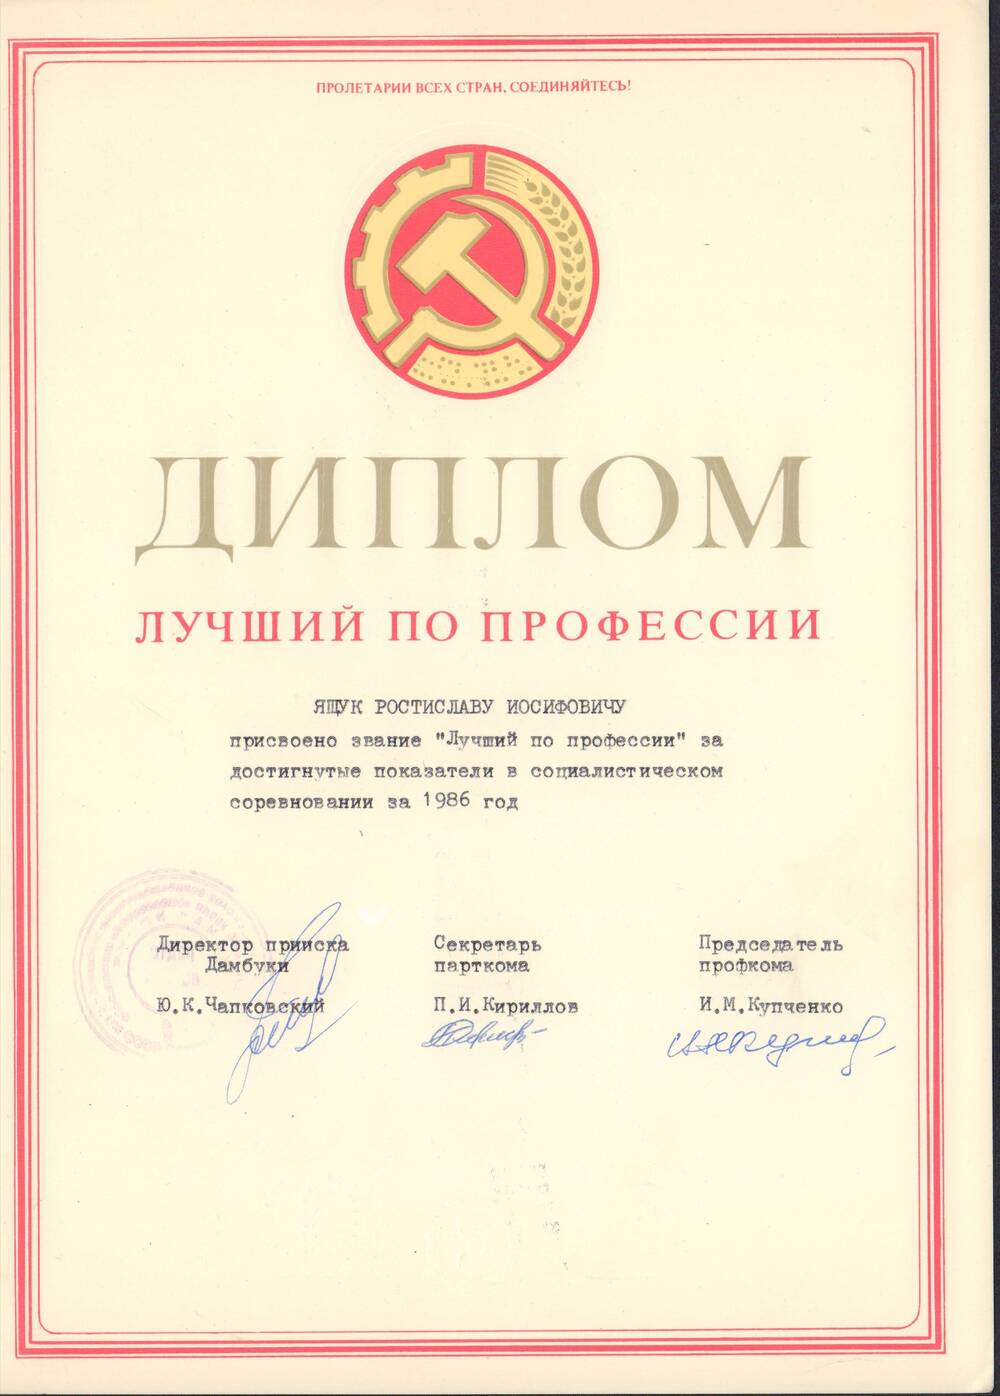 Диплом о присвоении звания Лучший по профессии за достигнутые показатели в социалистическом соревновании за 1986 год от управления прииска Дамбуки.